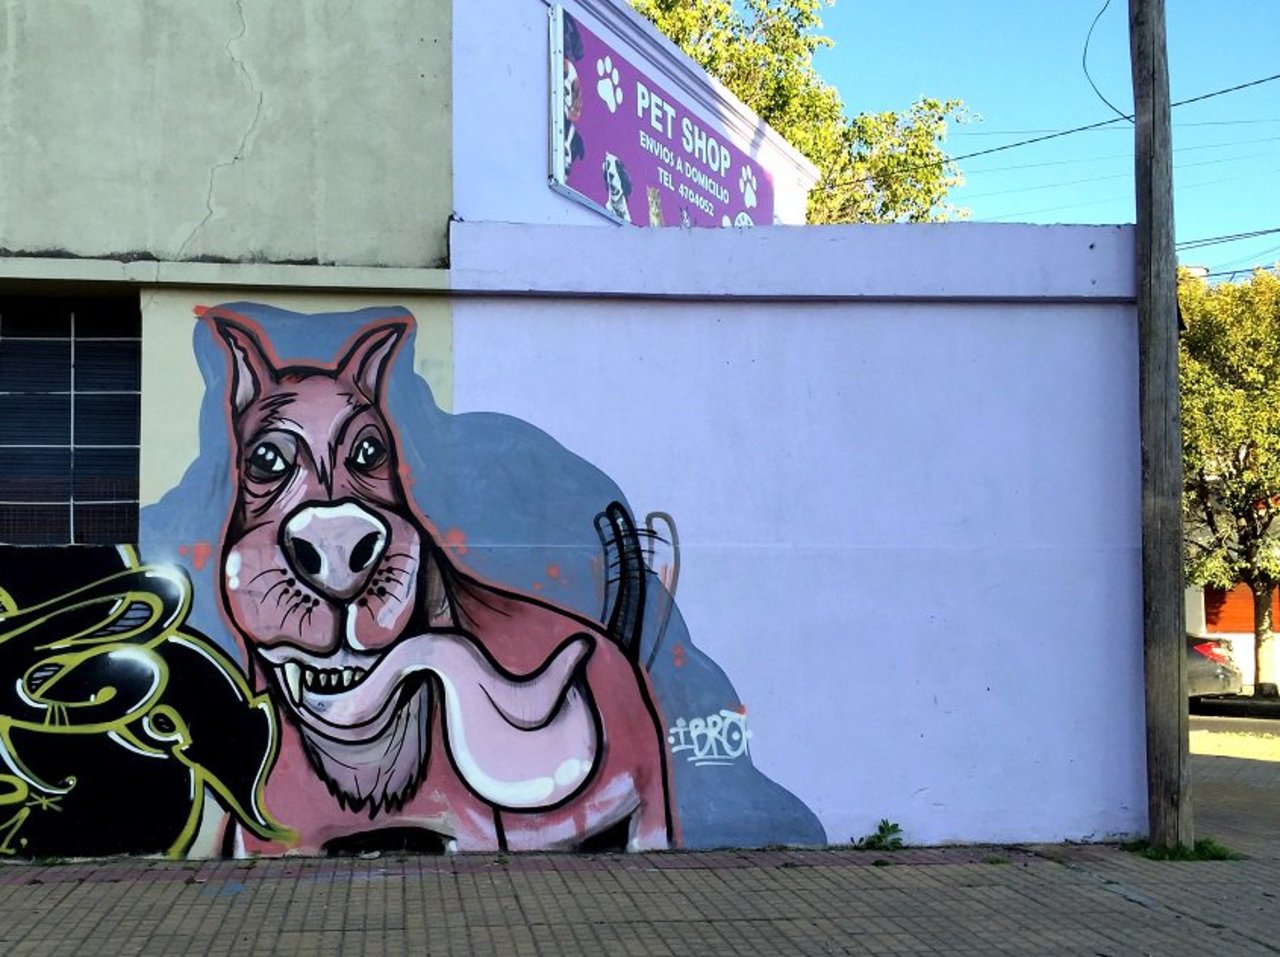 #Graffiti de hoy: << El amigo del hombre>> Diag. 76y46 #LaPlata #Argentina #StreetArt #UrbanArt #ArteUrbano https://t.co/L2vnPgMzmu